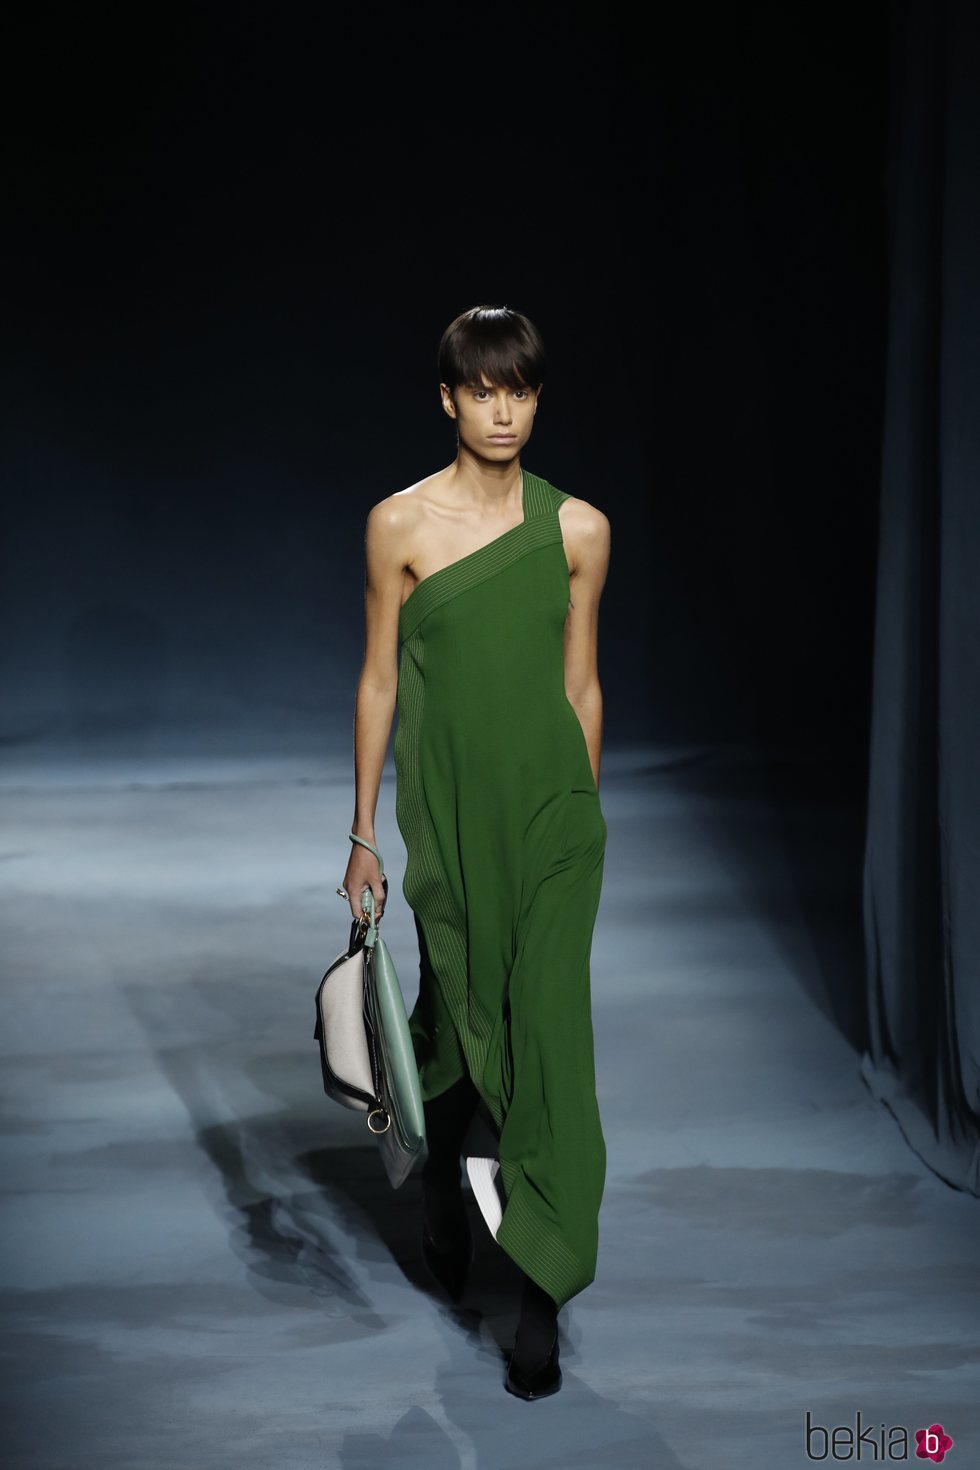 Modelo con un vestido asimétrico de la colección primavera/verano 2019 de Givenchy